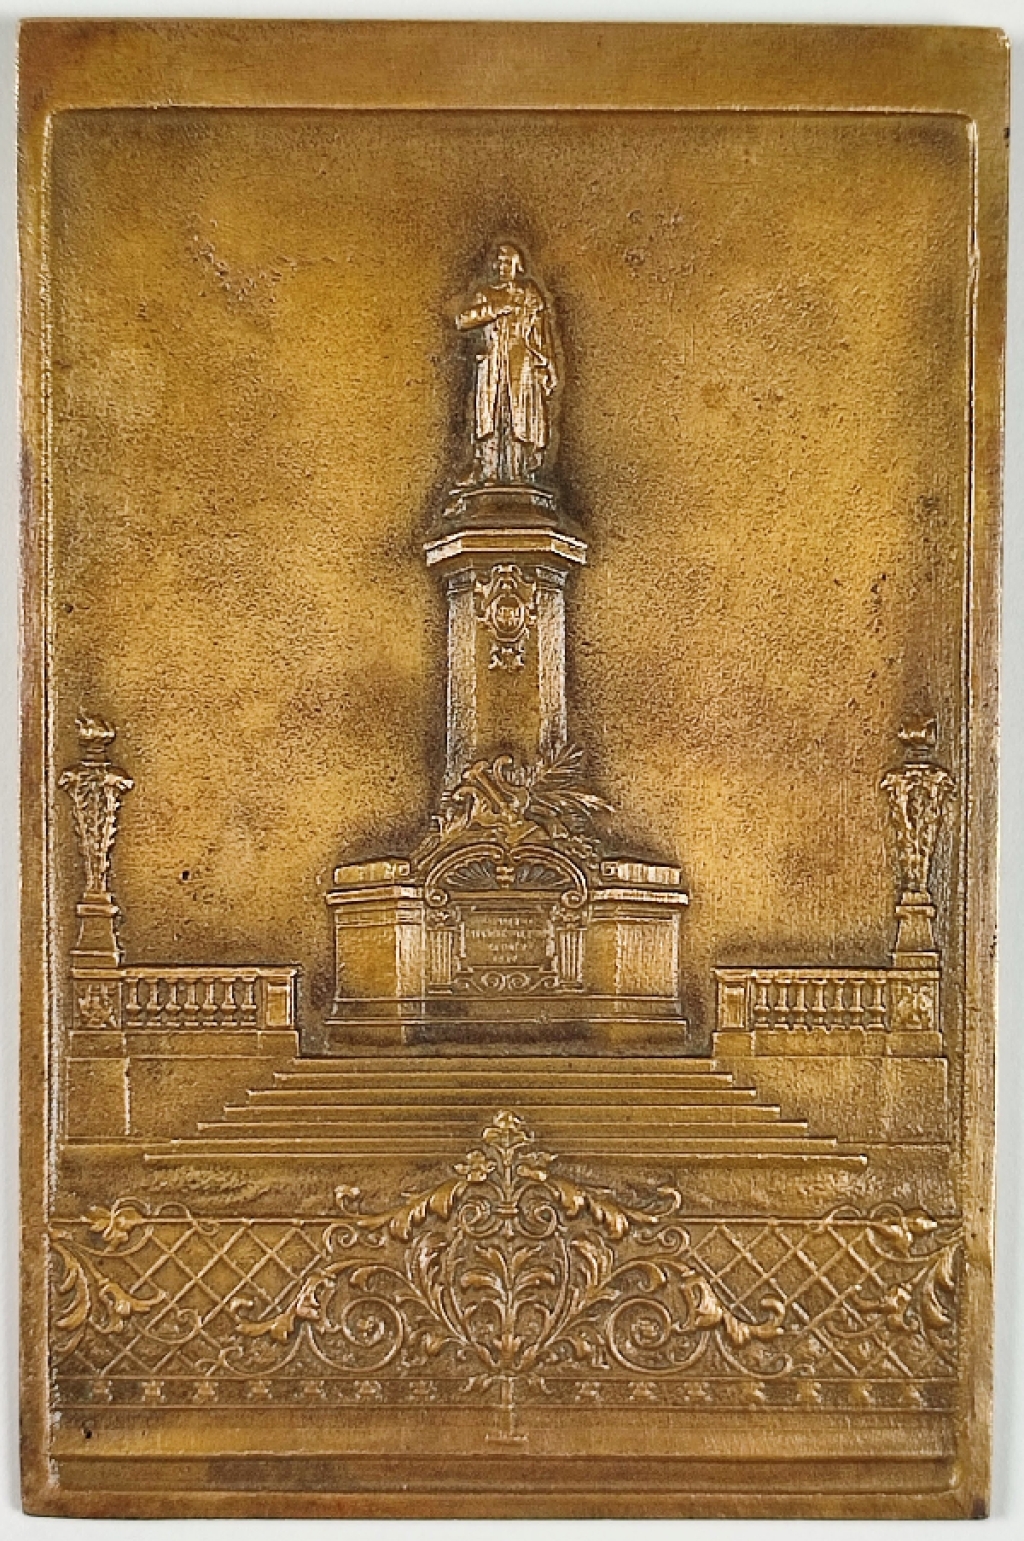 [plakieta, brąz, lata 1940-50-te] Pomnik Adama Mickiewicza